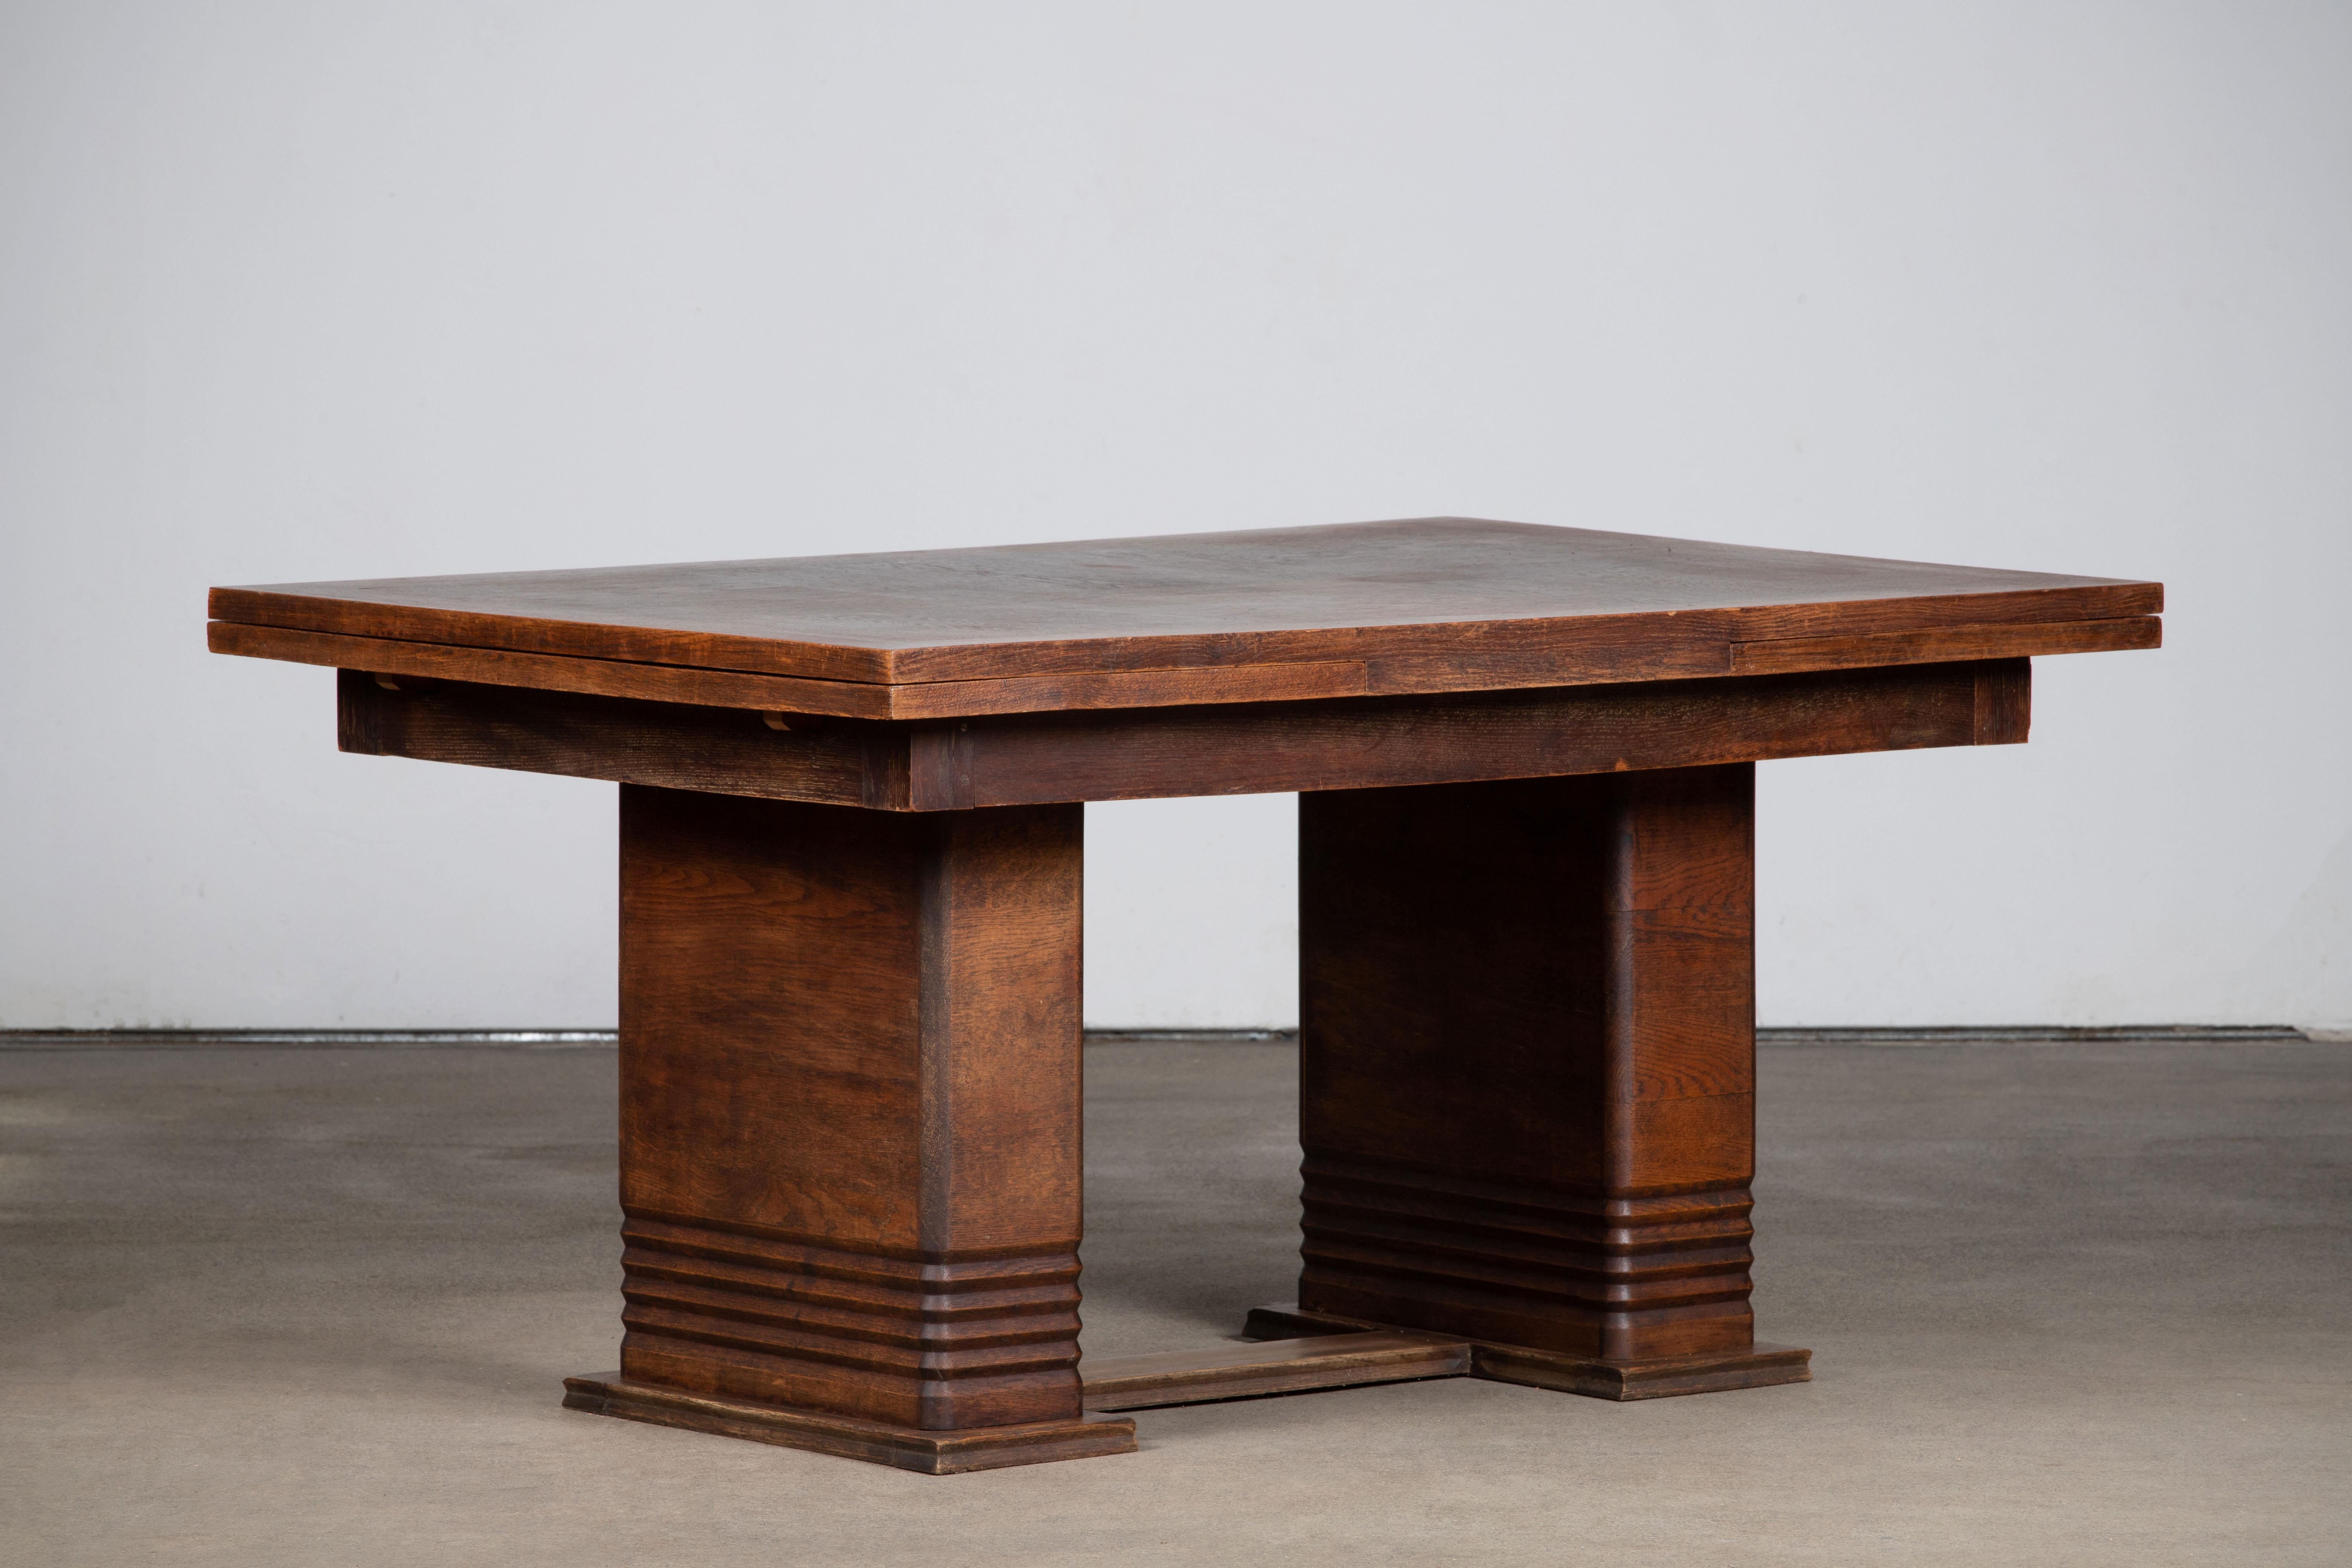 Französischer Art Deco Esstisch. Der Tisch besteht aus wunderschönem Eichenholz mit einer herrlichen Patina.
Er ruht auf hohen, brutalistisch verjüngten Beinen.
Der Tisch ist in einem ausgezeichneten Originalzustand mit geringen alters- und